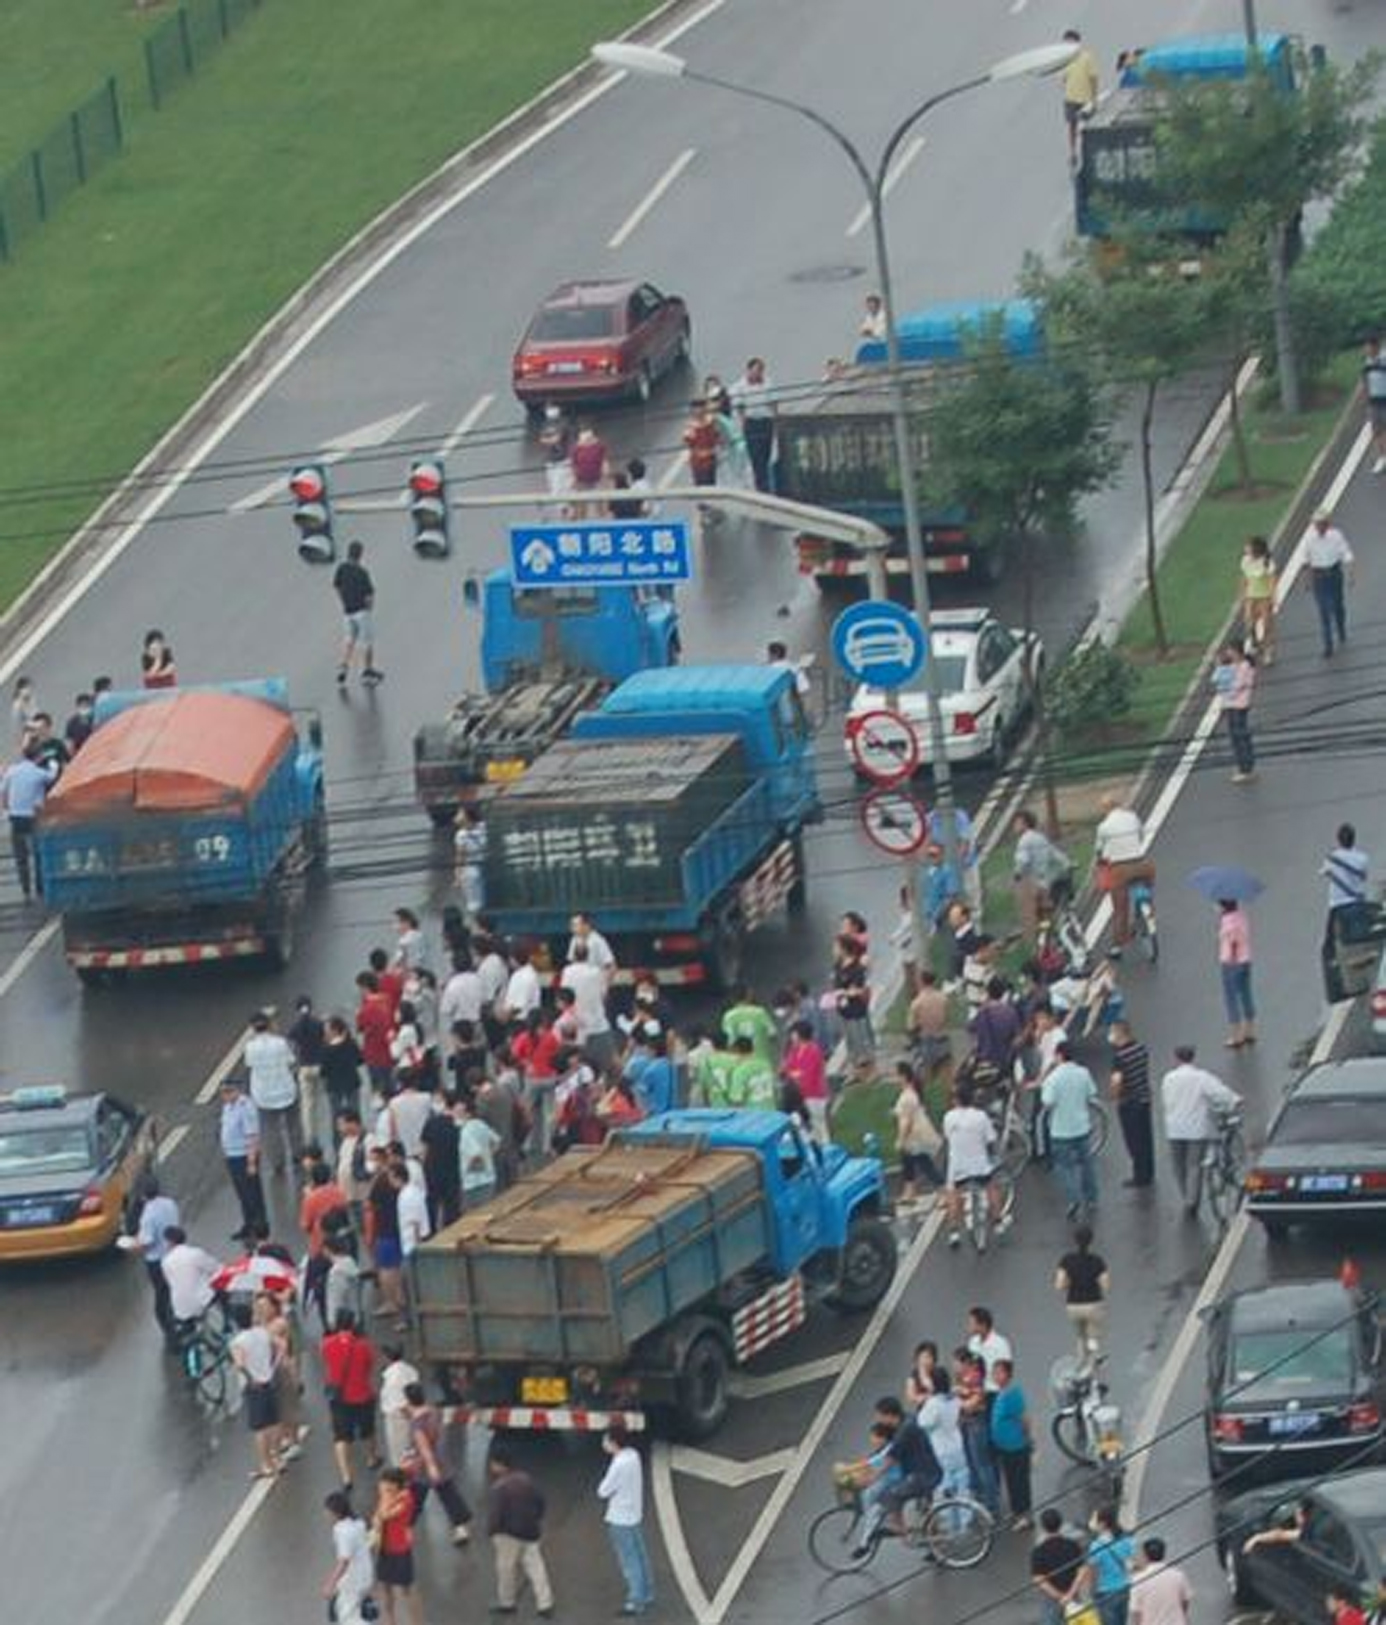 北京朝陽區大規模群眾示威導致交通阻斷3小時以上。